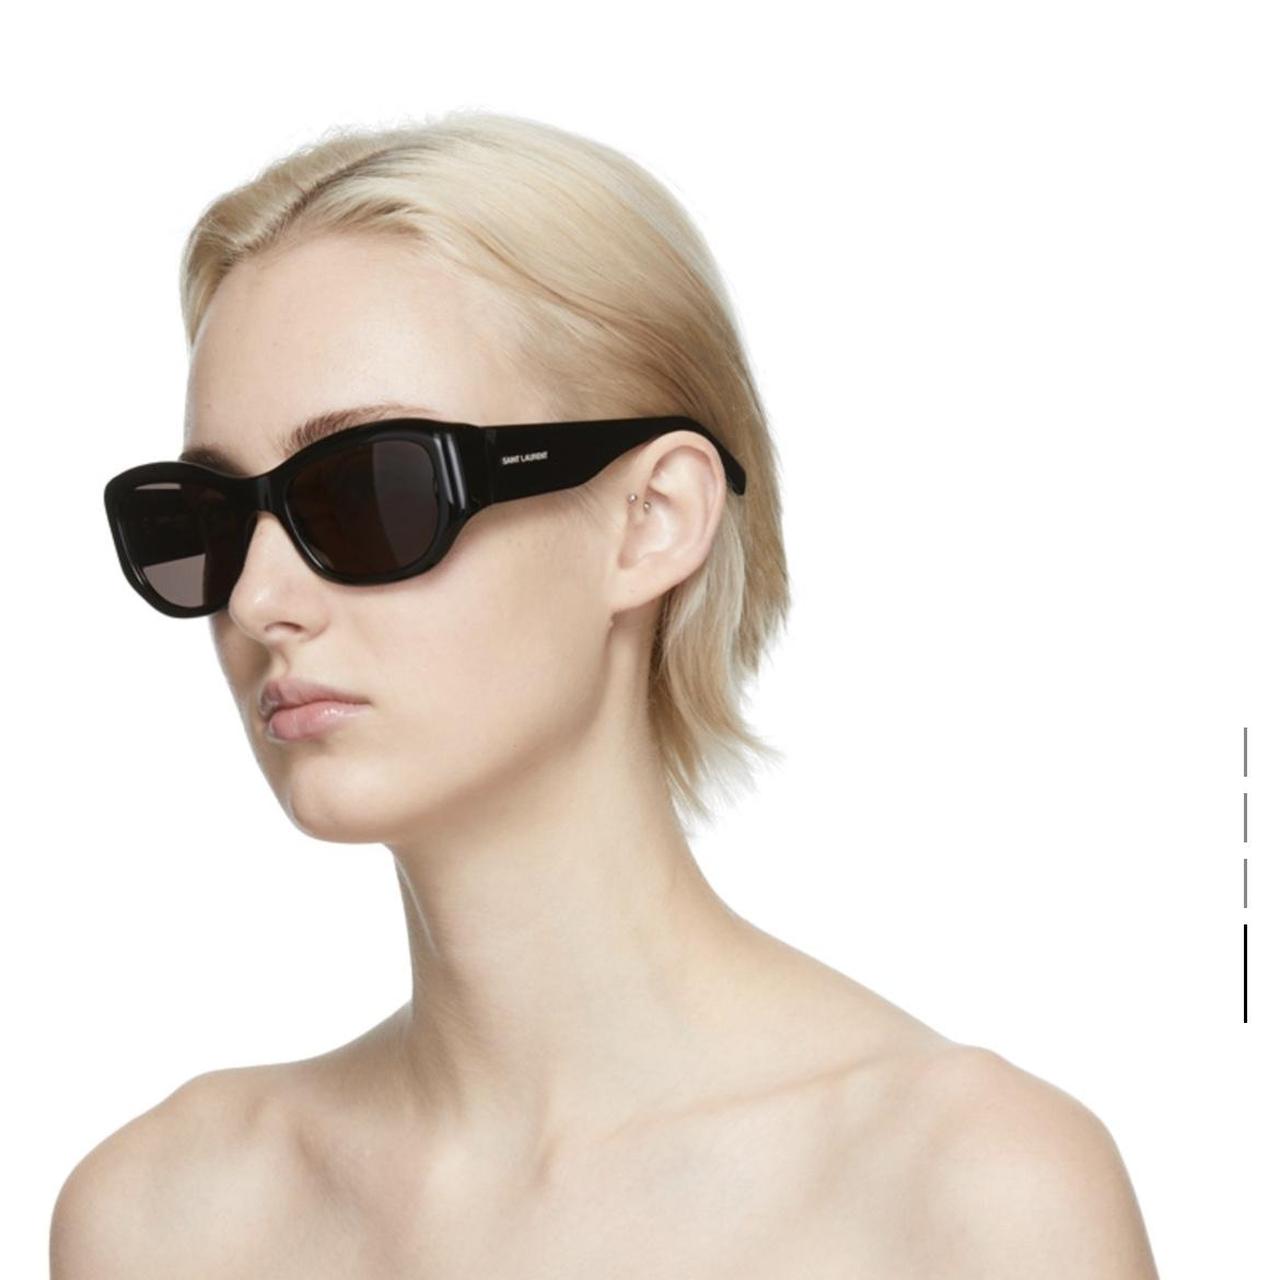 Brand new Saint Laurent sunglasses, (Bit too big for